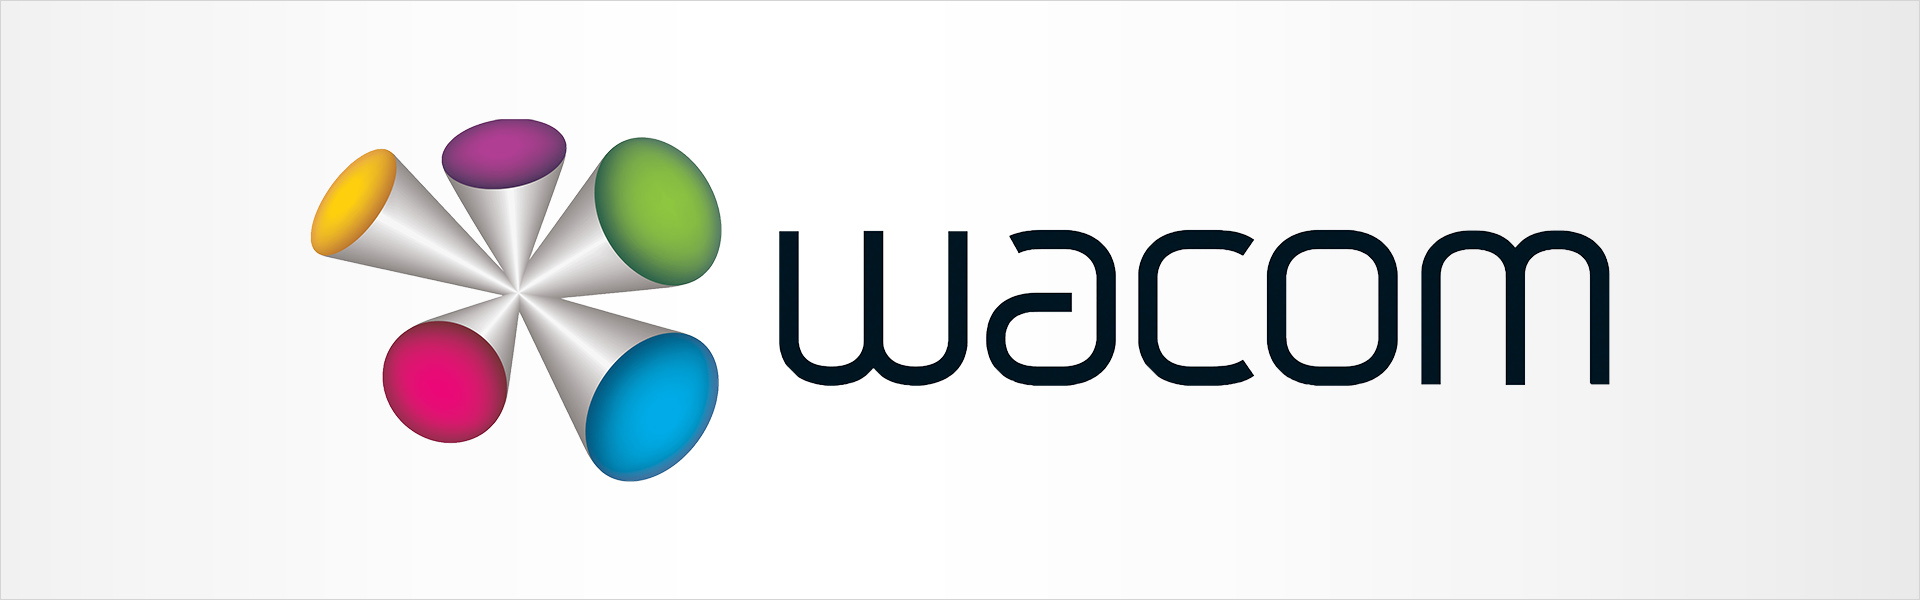 WACOM MobileStudio Pro 16 i7 512GB gen2 Wacom